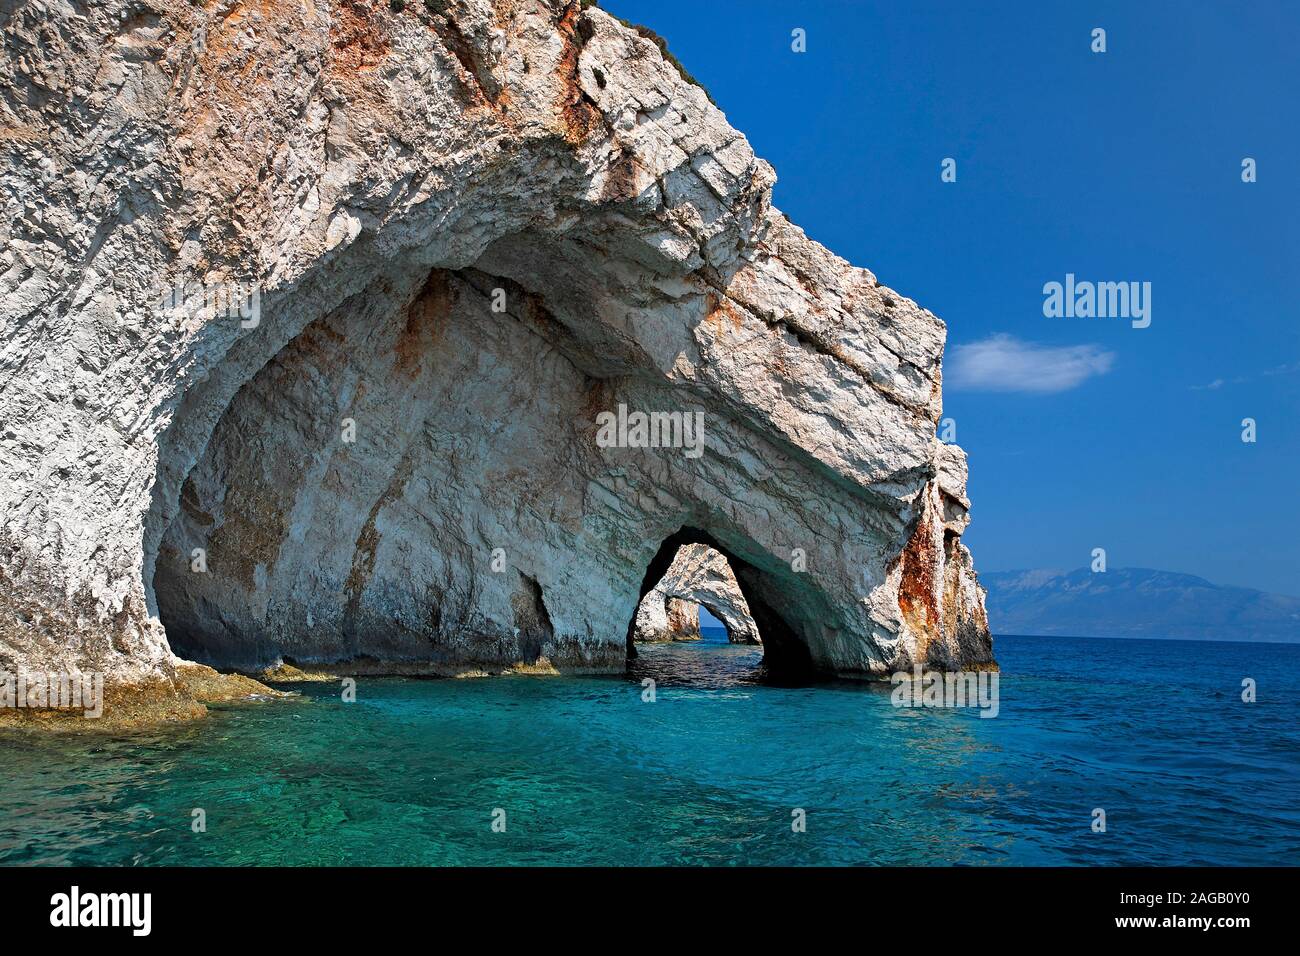 Costa rocosa de Kap Skinari, ubicación de las cuevas, azul, la isla de Zakynthos, Grecia Foto de stock